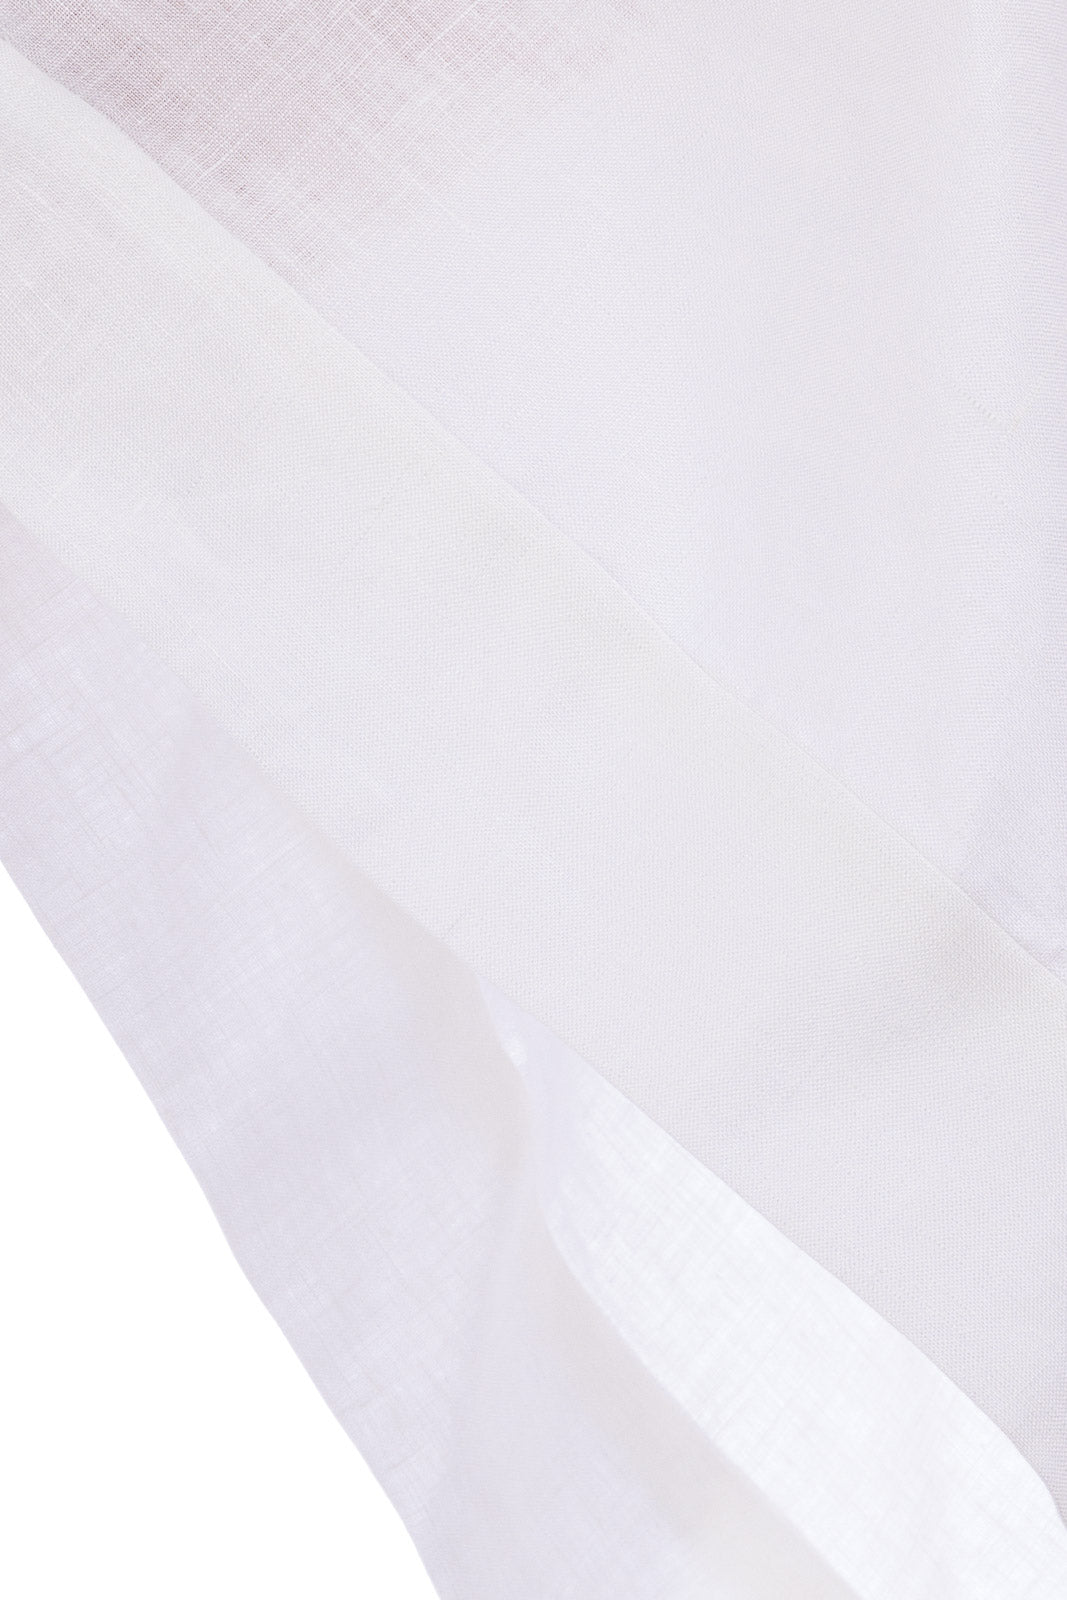 Linen Short Katan ( with Lace details )